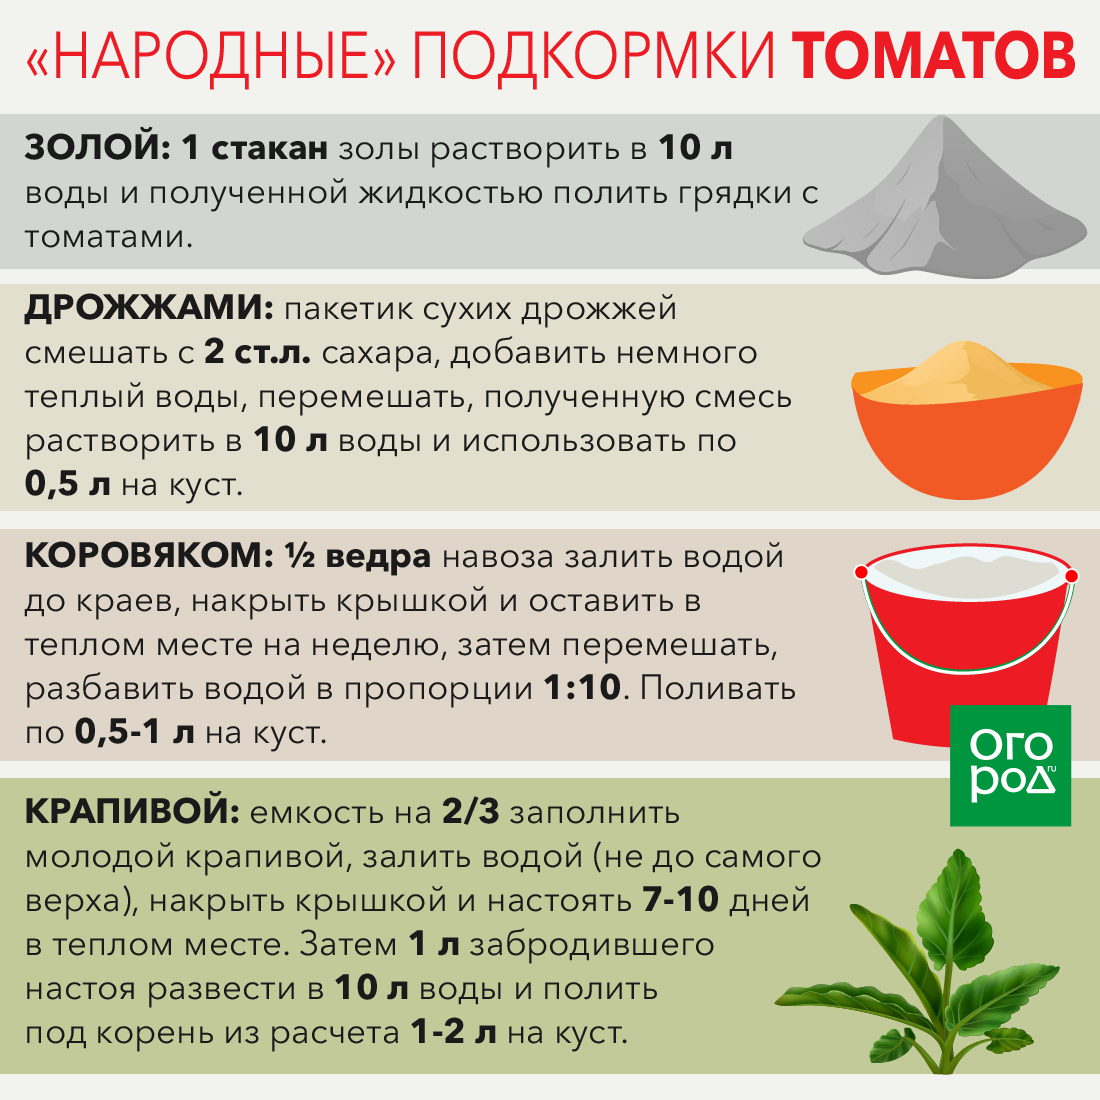 Подкормка дрожжами: огурцов, томатов в теплице и открытом грунте